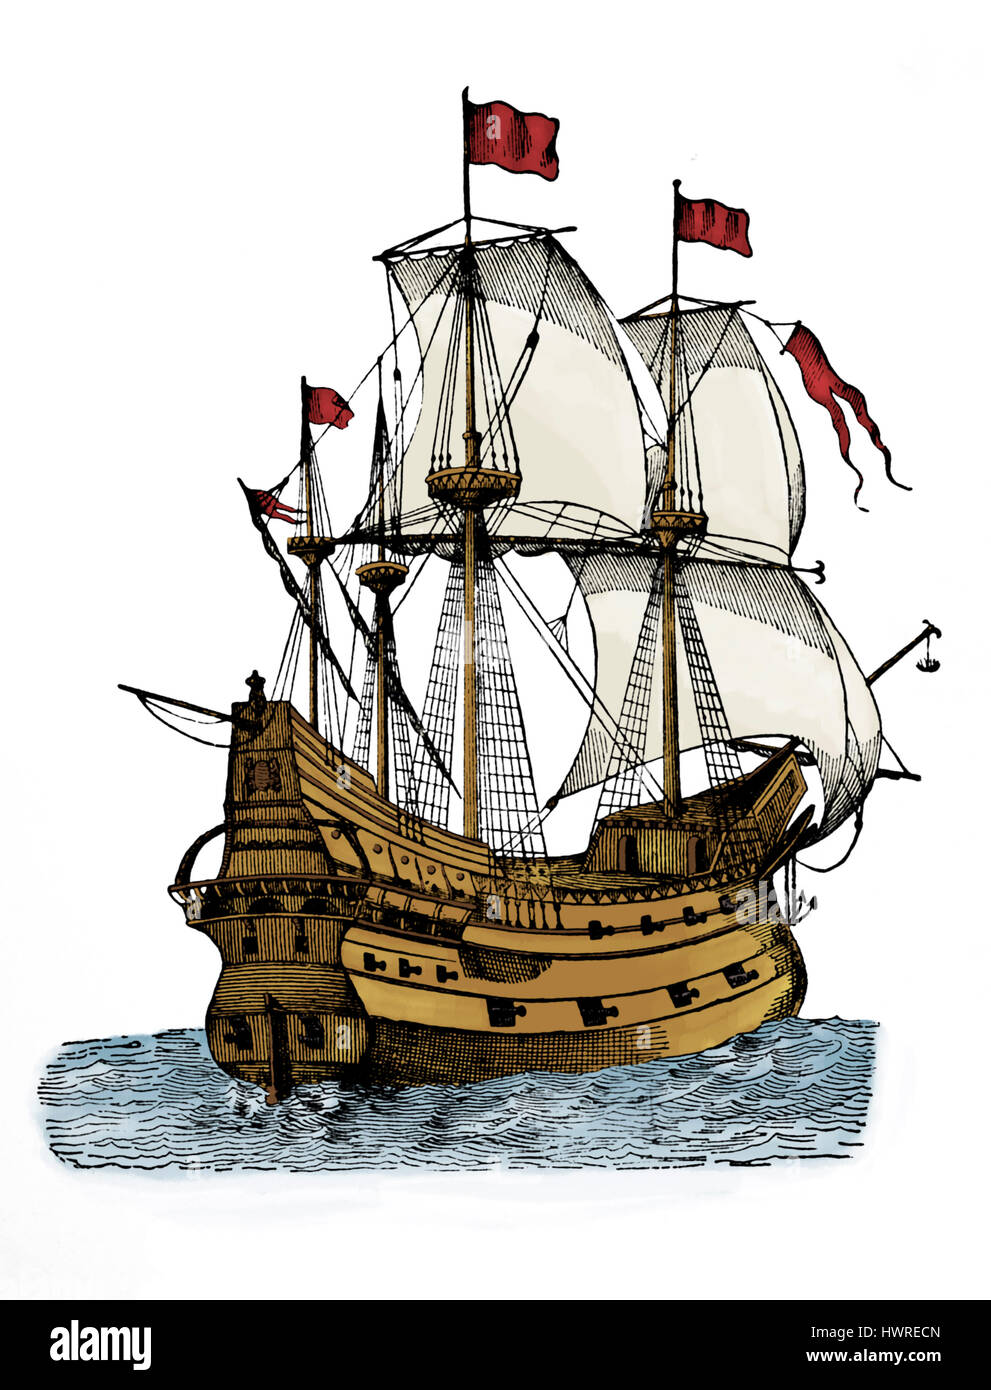 Galeone des 15. Jahrhunderts. Schiff von Piraten verwendet. Stockfoto